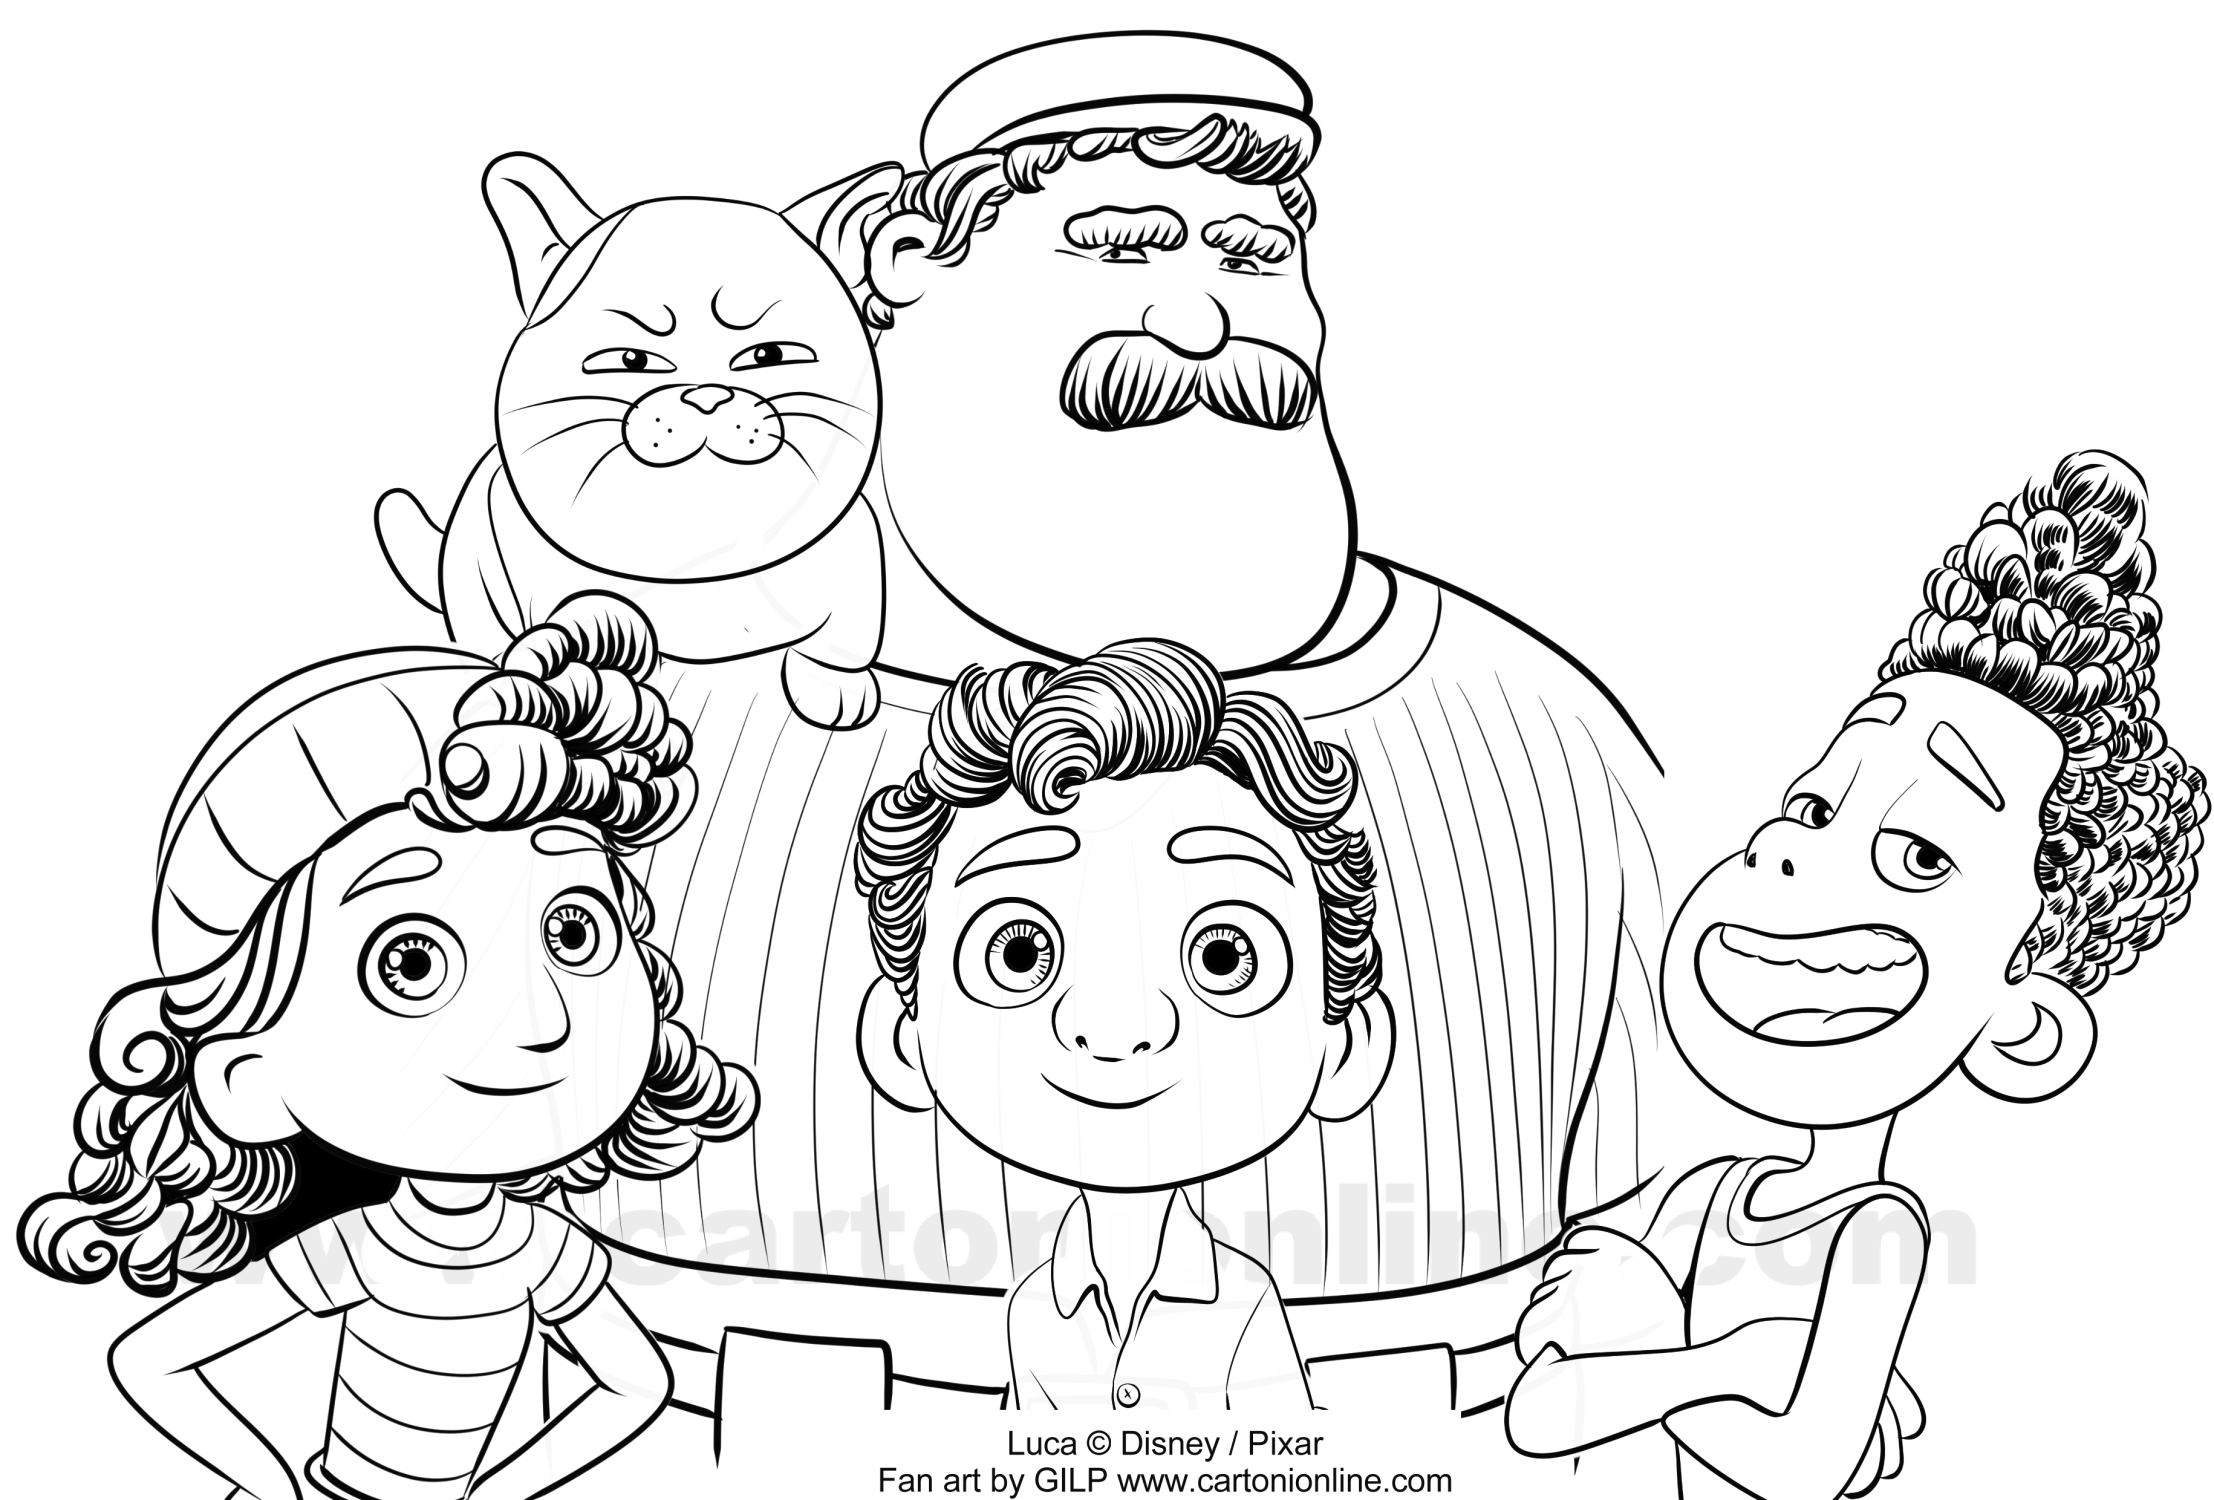 Luca, Alberto, Giulia, Massimo, Macchiavelli di Luca (Disney / Pixar) målarbok att skriva ut och färglägga